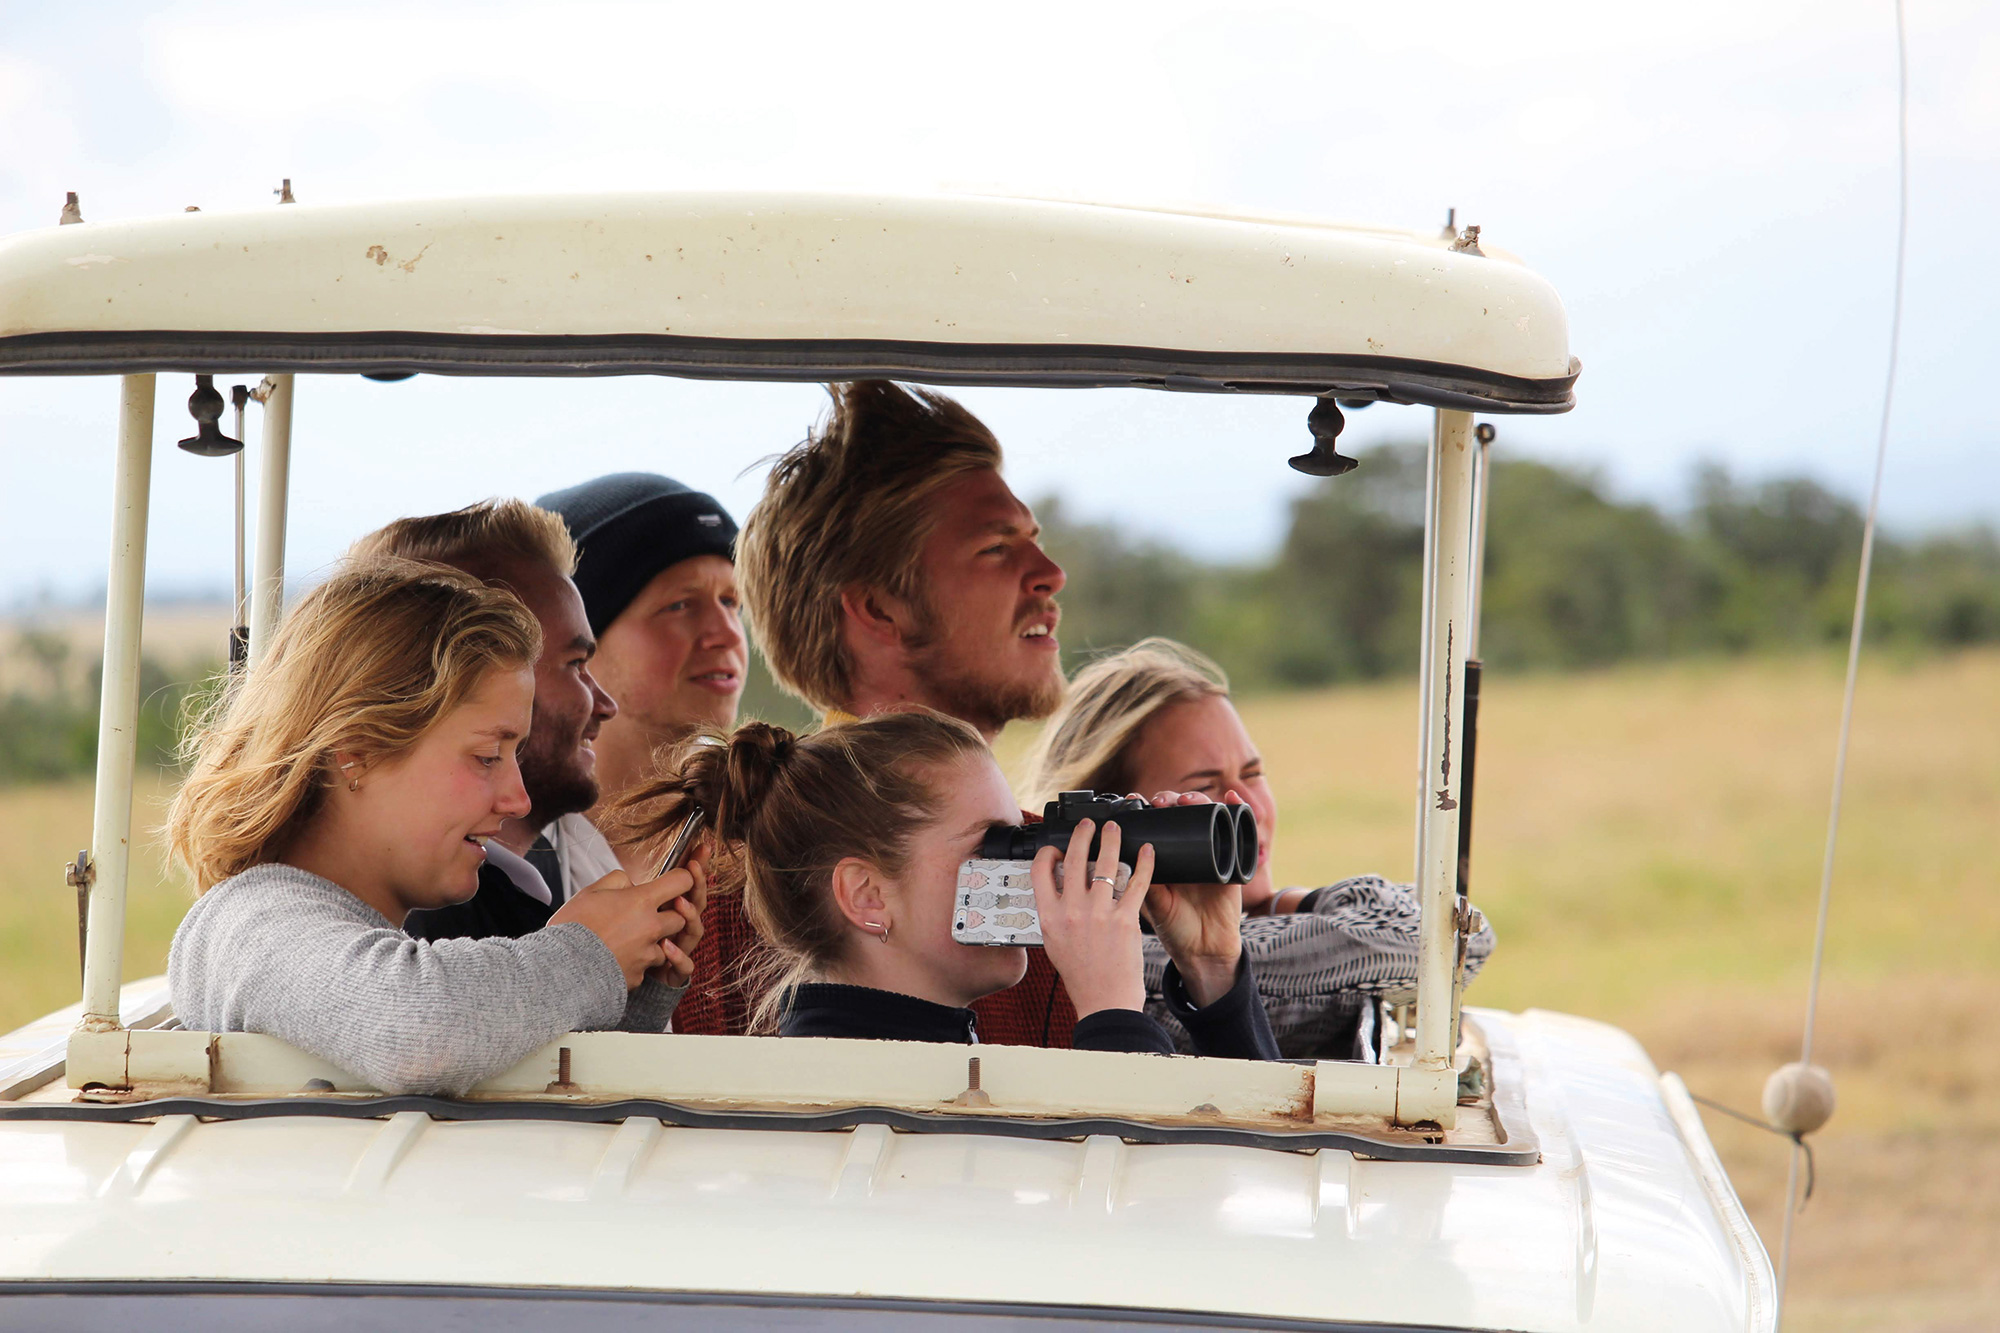 Der venter store oplevelser når vi tager på safari i Kenya i Afrika.